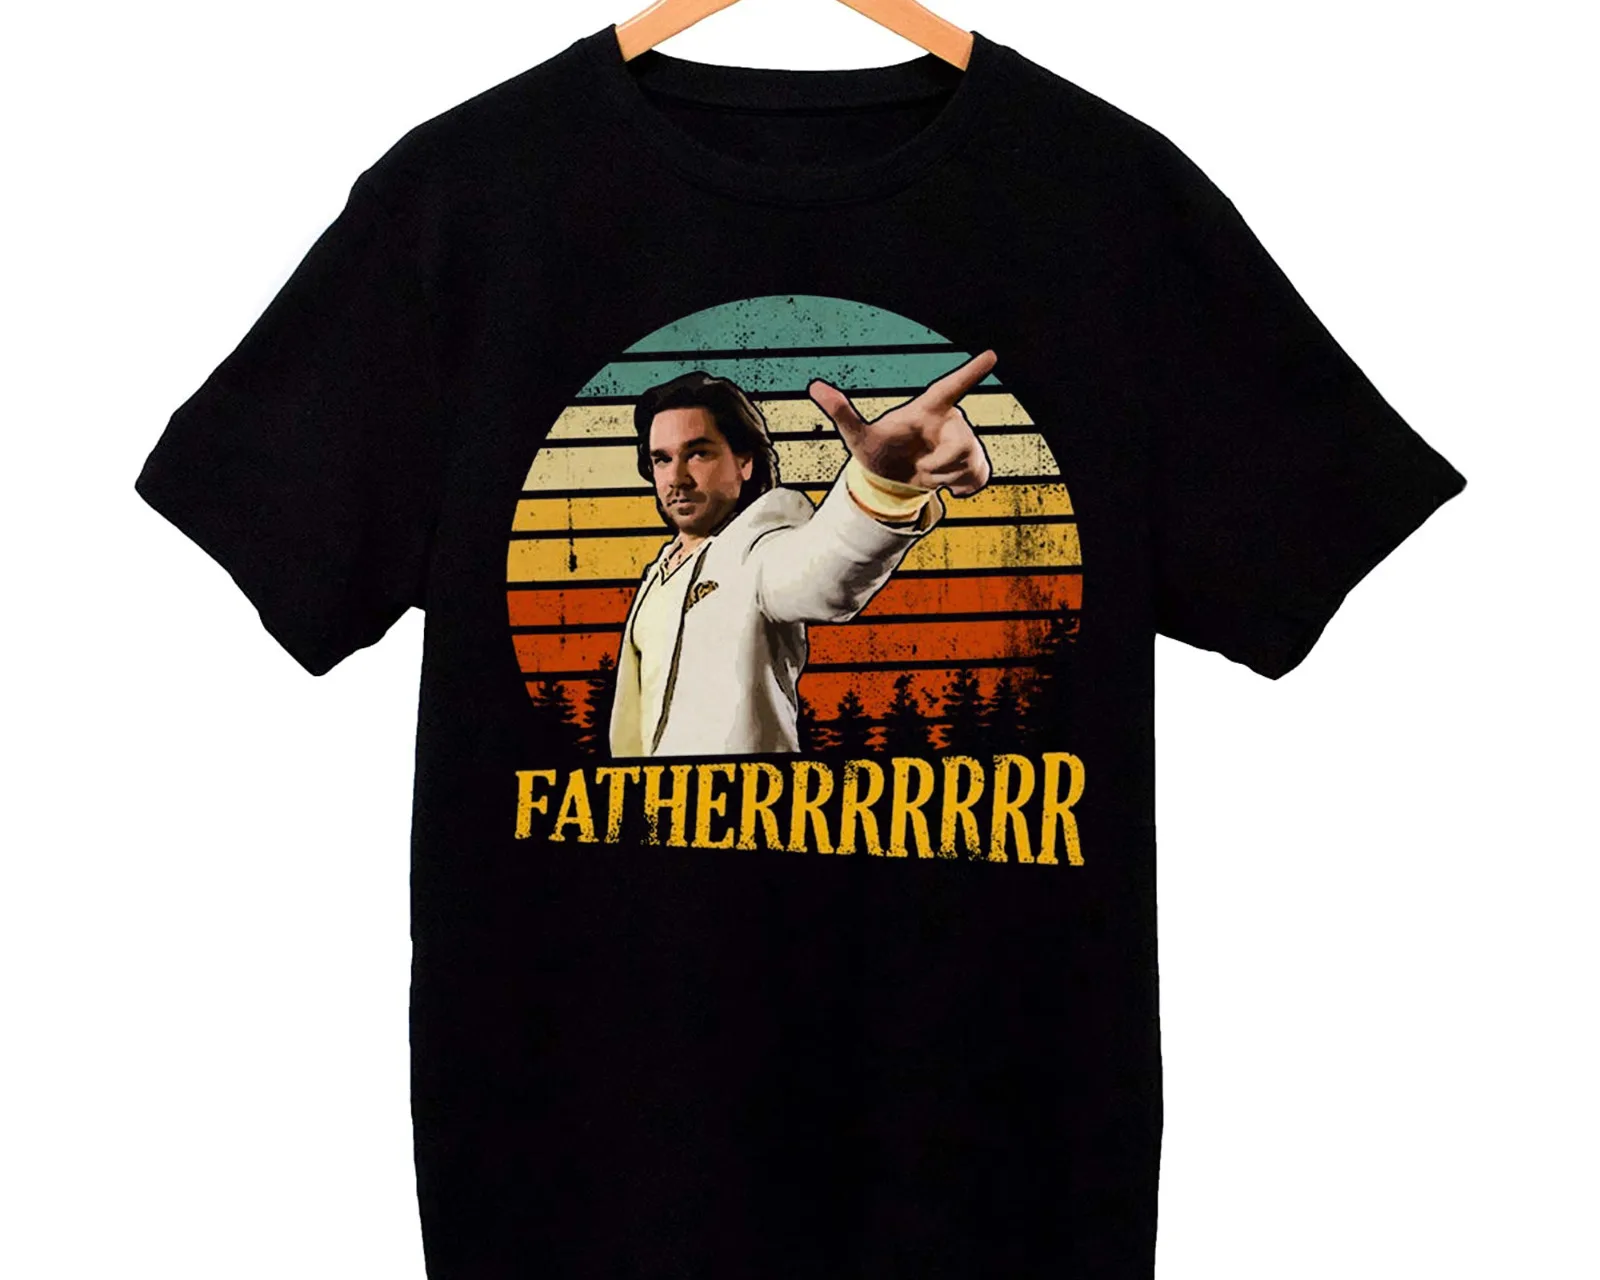 Рубашка для отца из толпы Дуглас рейнольм рубашка идея семейного подарка |